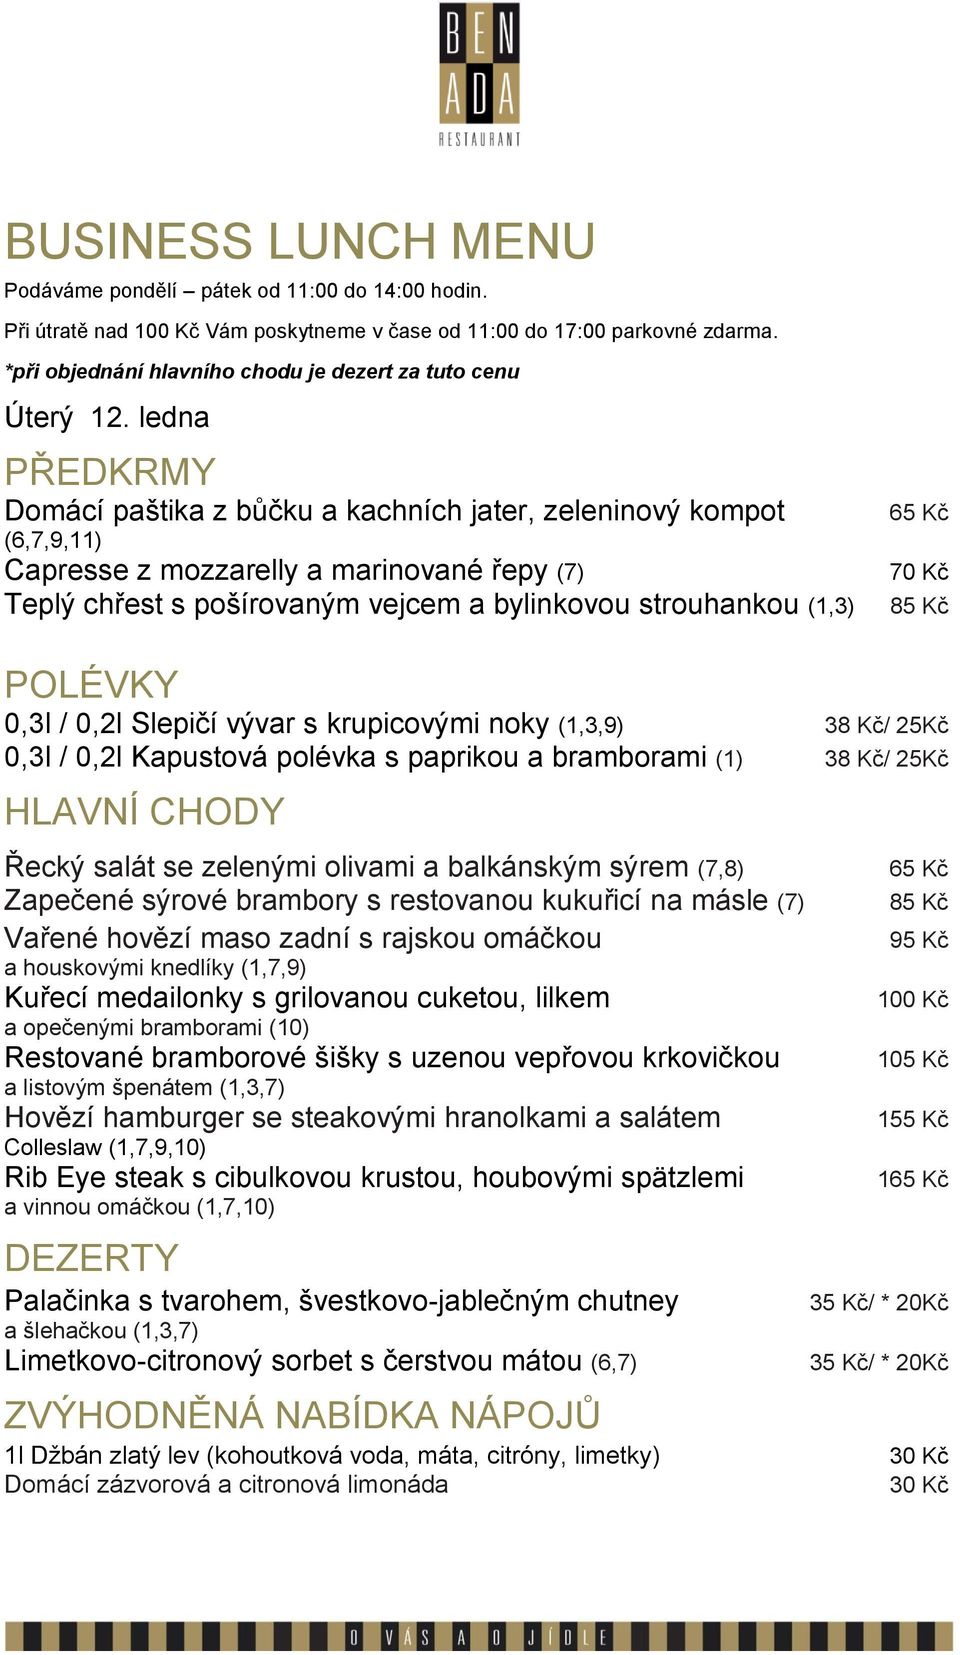 Řecký salát se zelenými olivami a balkánským sýrem (7,8) Zapečené sýrové brambory s restovanou kukuřicí na másle (7) Vařené hovězí maso zadní